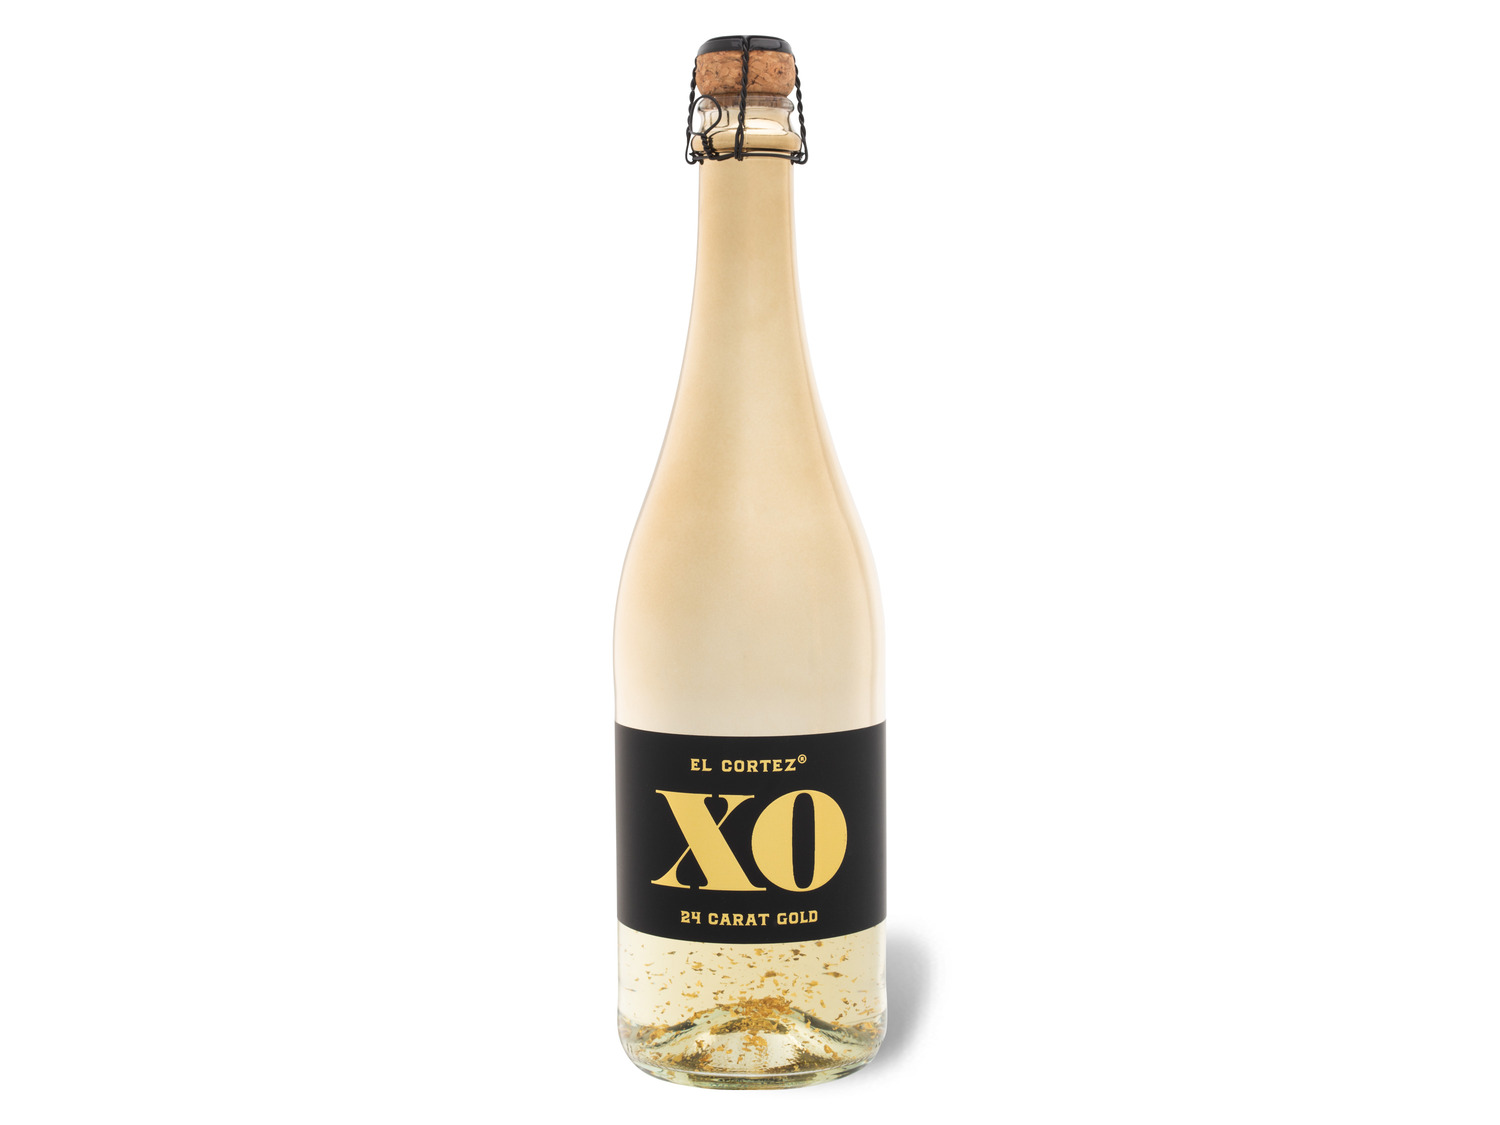 Aromatisiertes schaumweinhaltig… XO 24K Cortez Gold, El